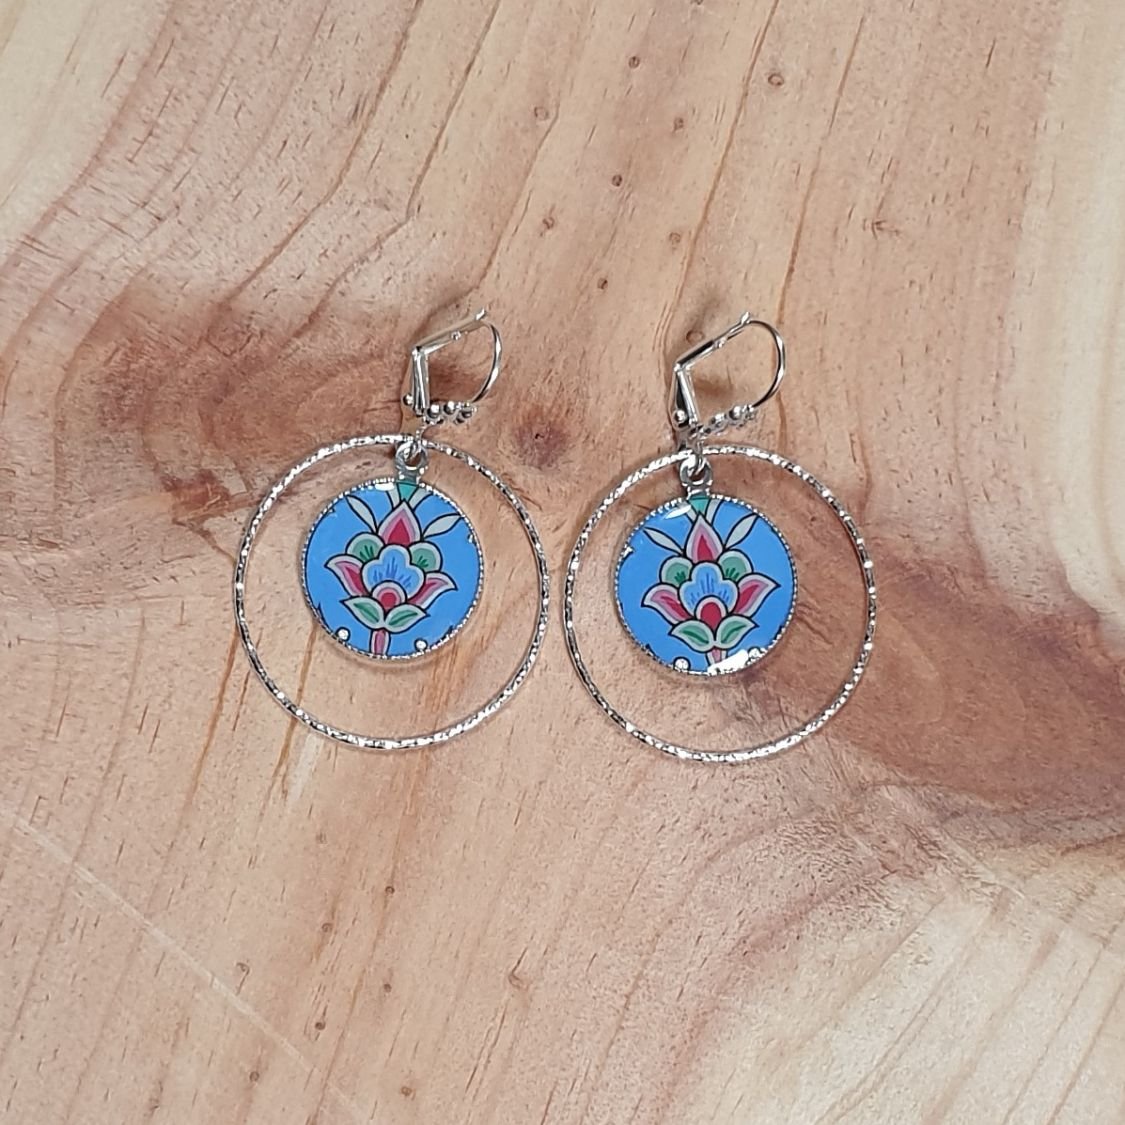 Boucles d'oreille pendantes enluminées fleur bleu/argenté/vert/rosé